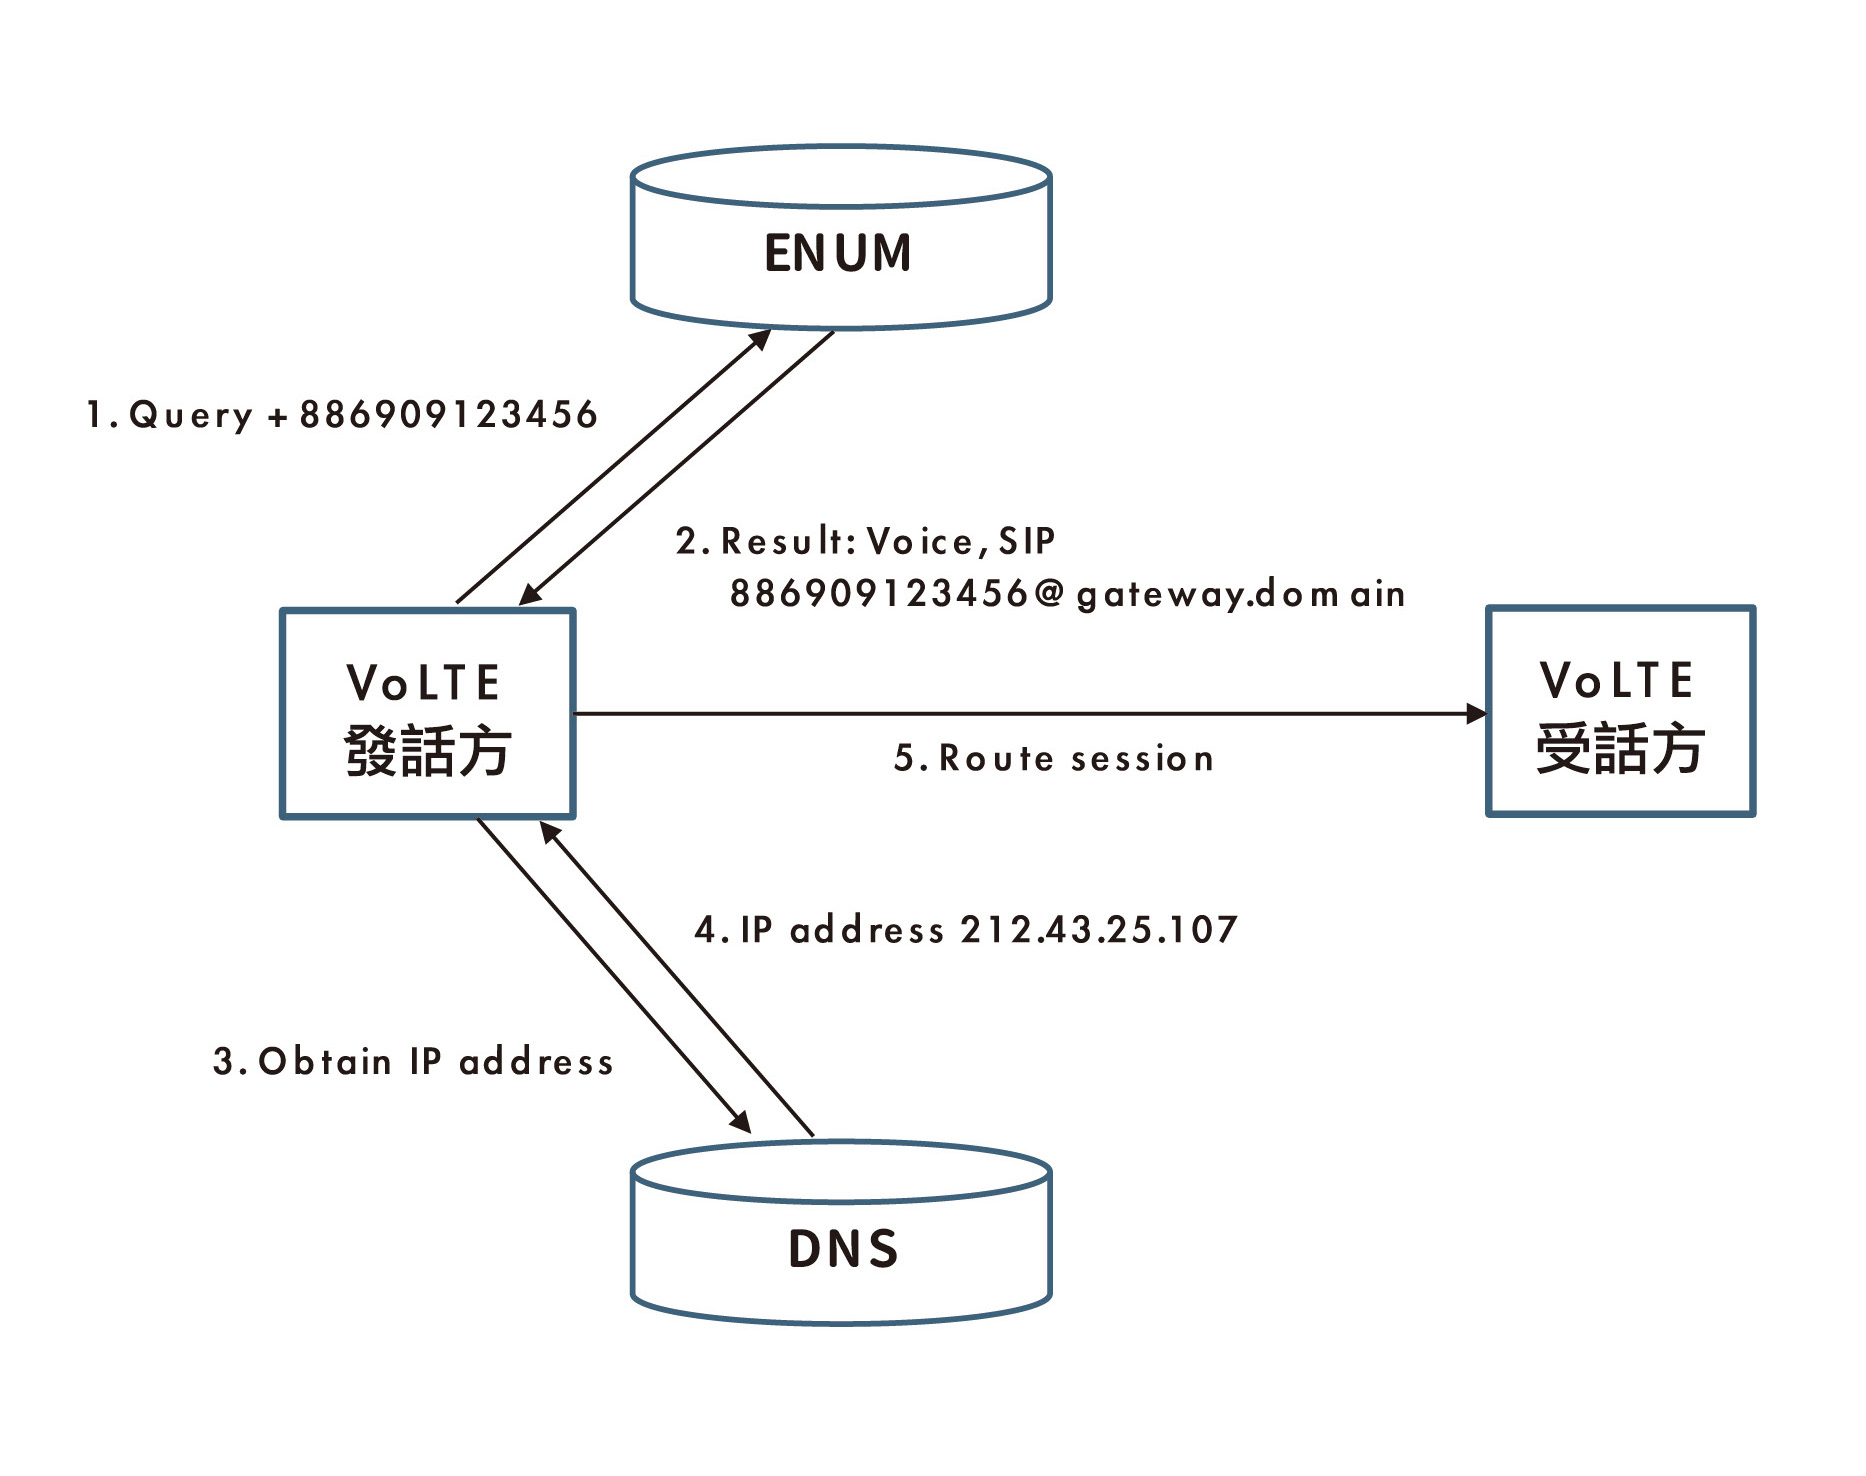 ENUM伺服器IP位址轉換機制